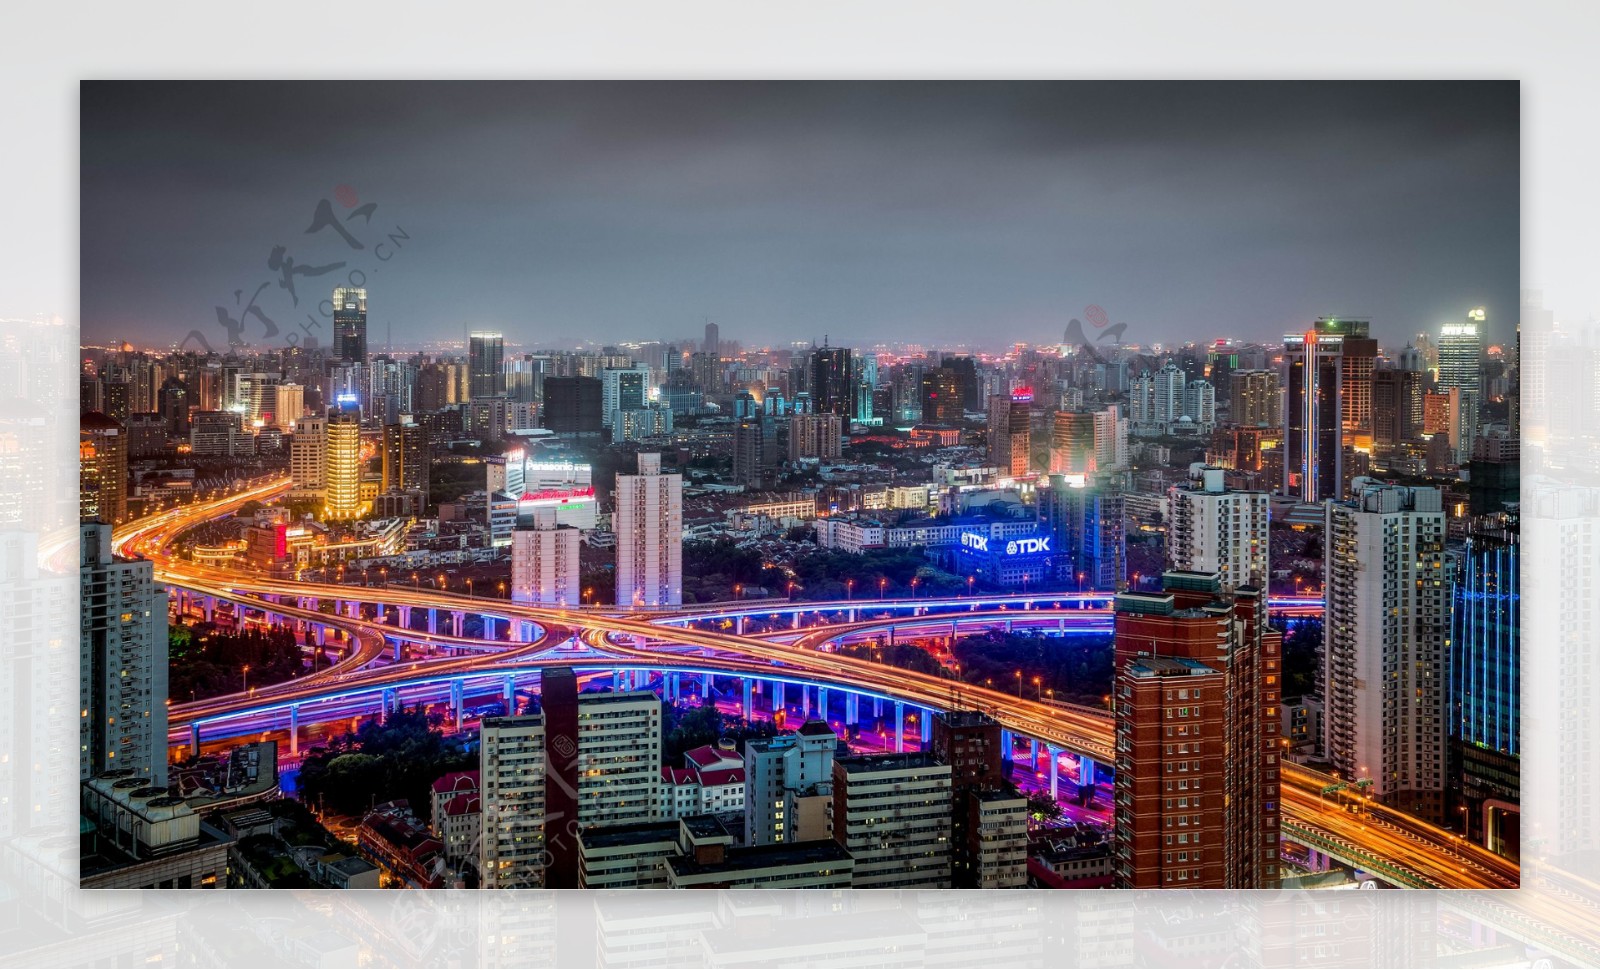 上海内环高架俯瞰夜景图片